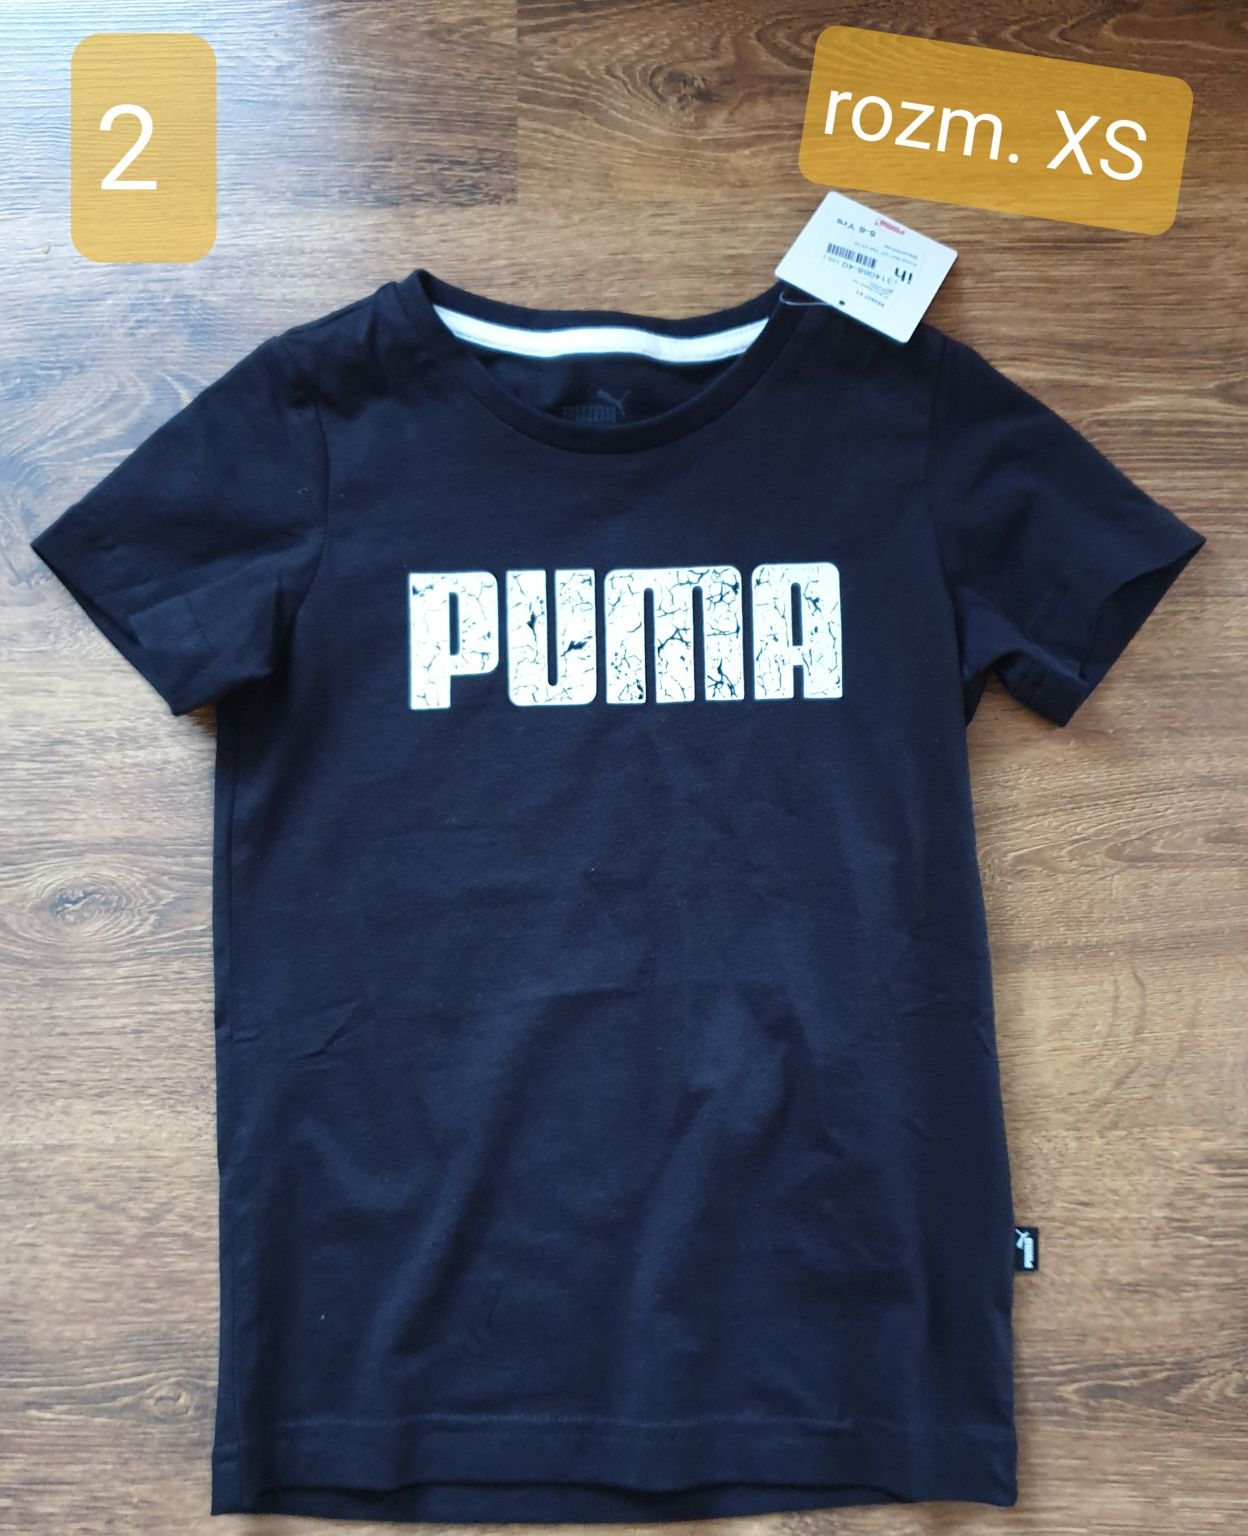 Koszulka Puma rozm. XS